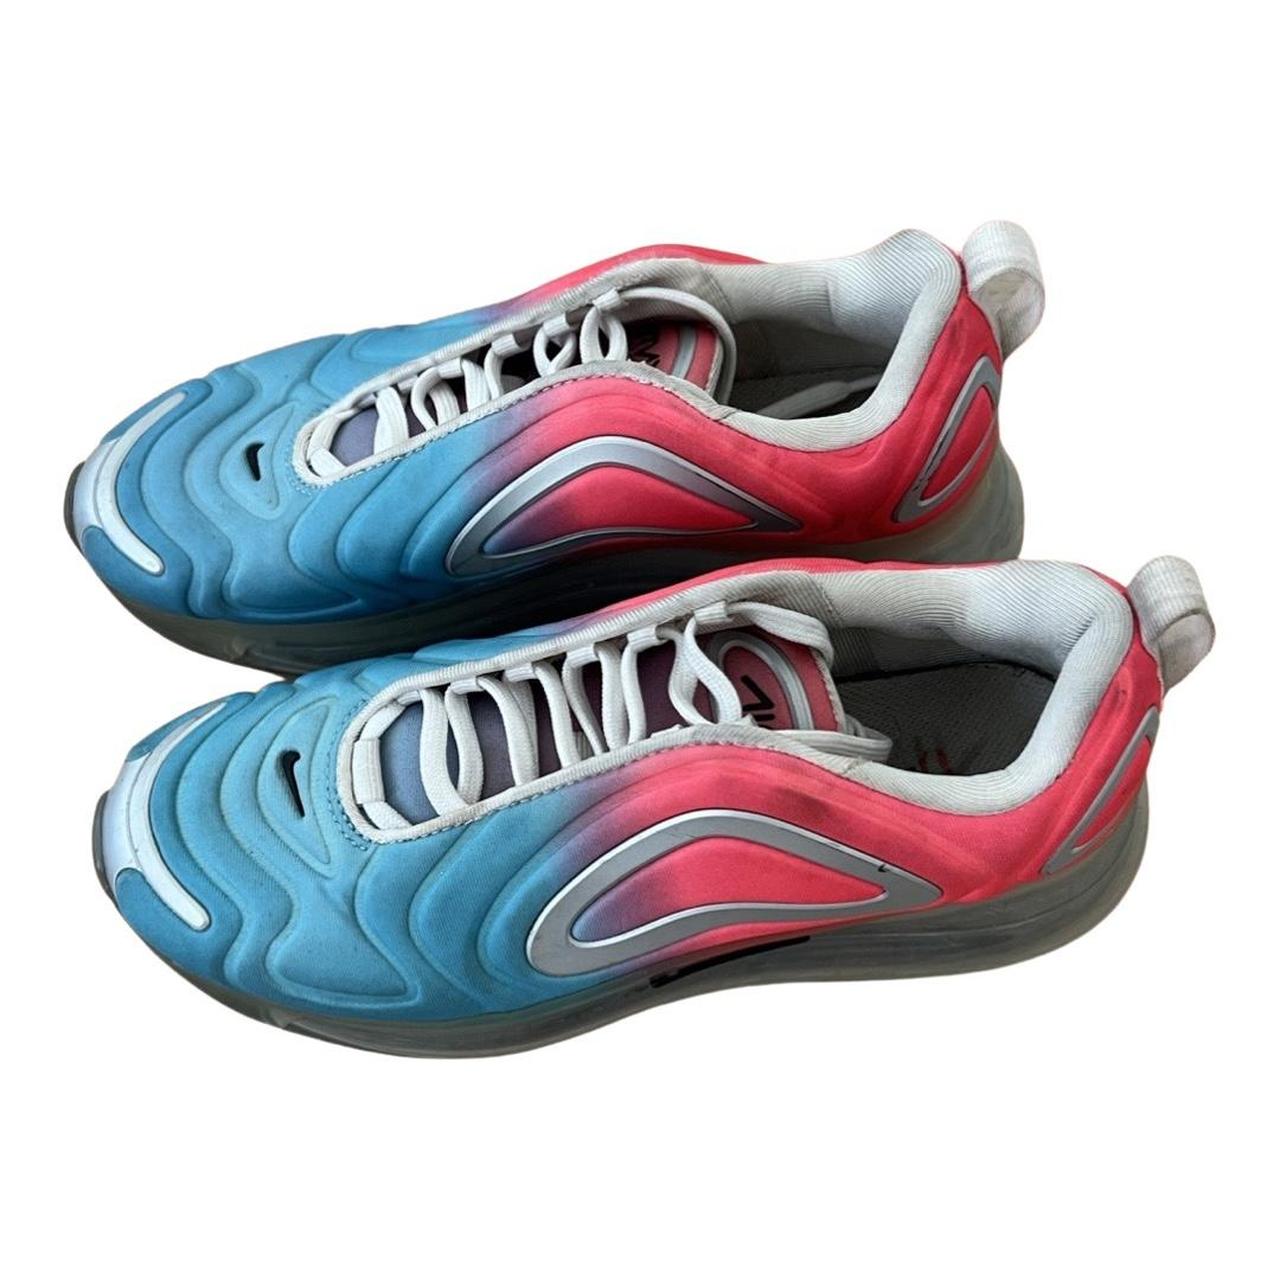 Nike Wmns Air Max 720 Pink Sea